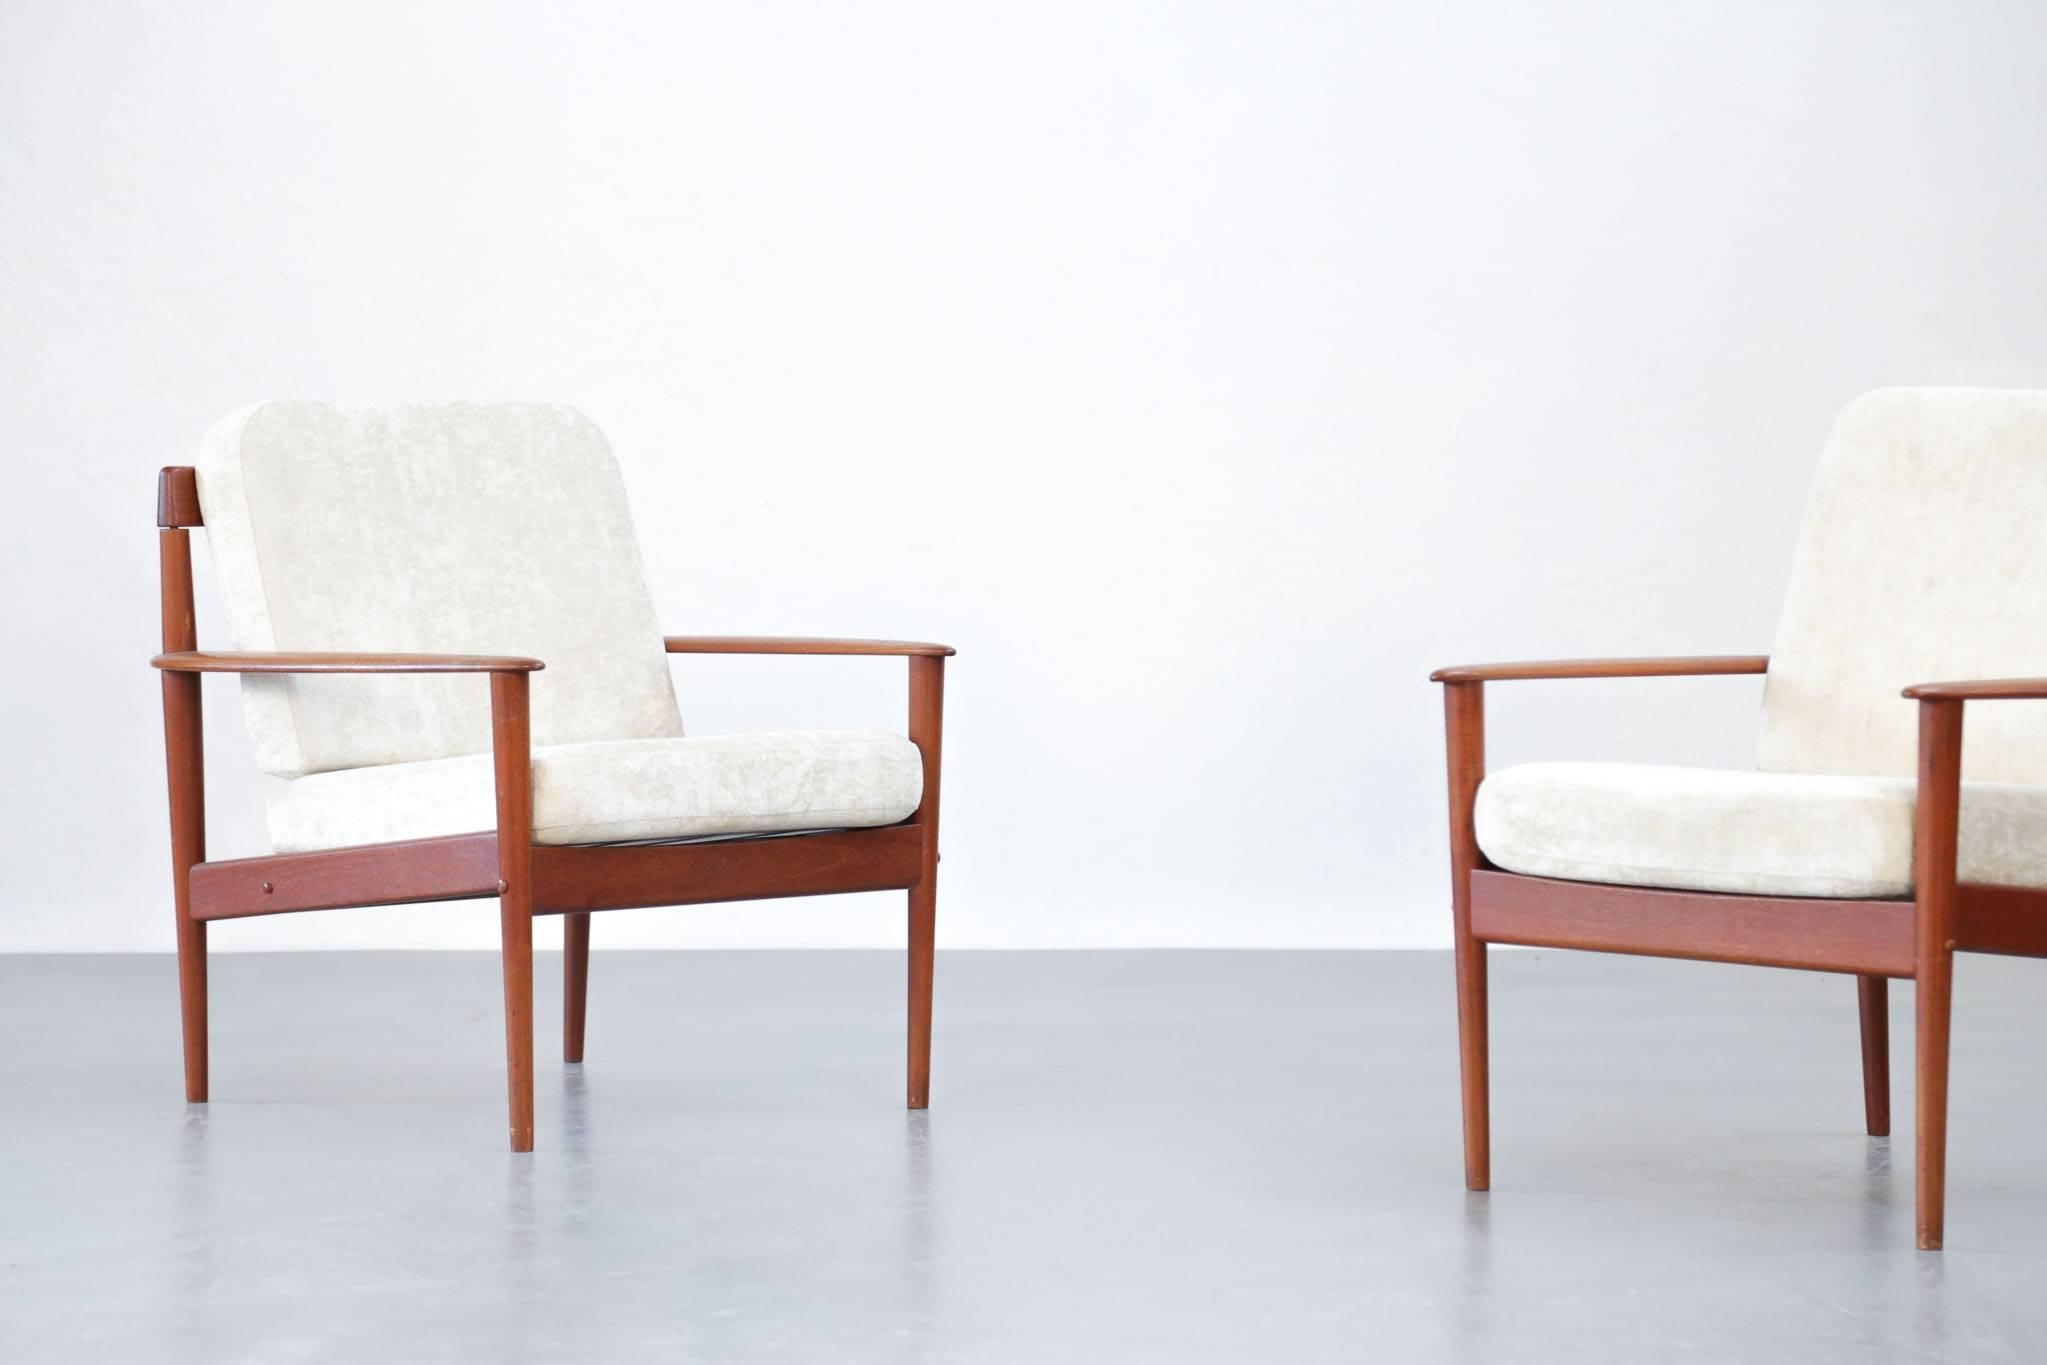 Ein Paar Grete Jalk Sessel, Dänemark, 1960er Jahre. Ausgezeichneter Zustand.
Neue Kissen, frisch gepolstert.
Perfekter Zustand.